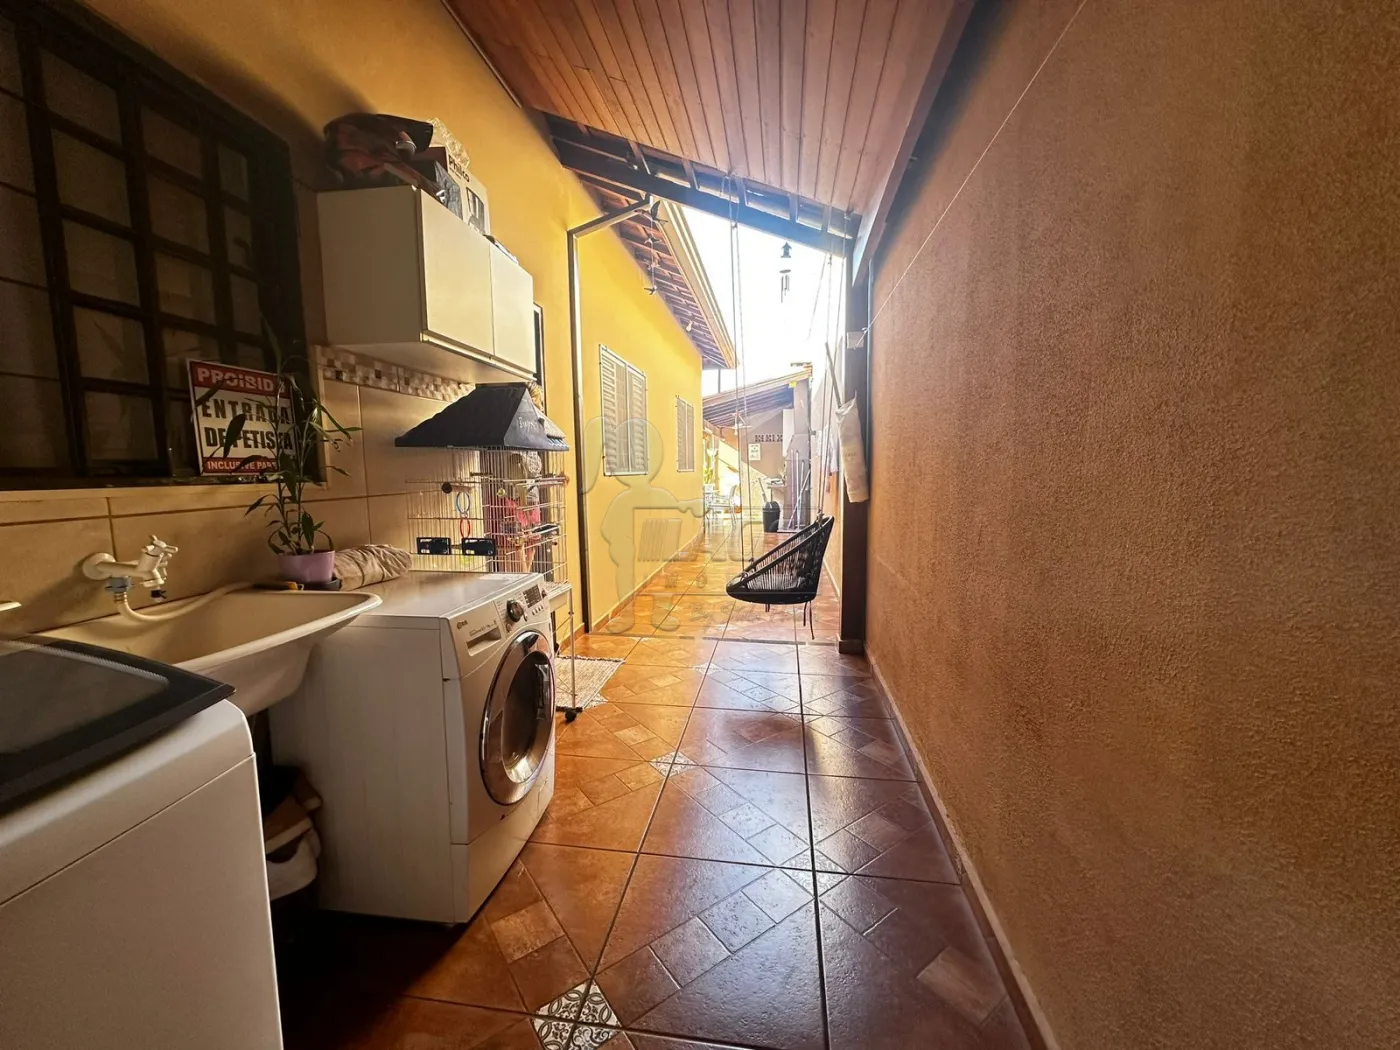 Comprar Casa / Padrão em Ribeirão Preto R$ 640.000,00 - Foto 5